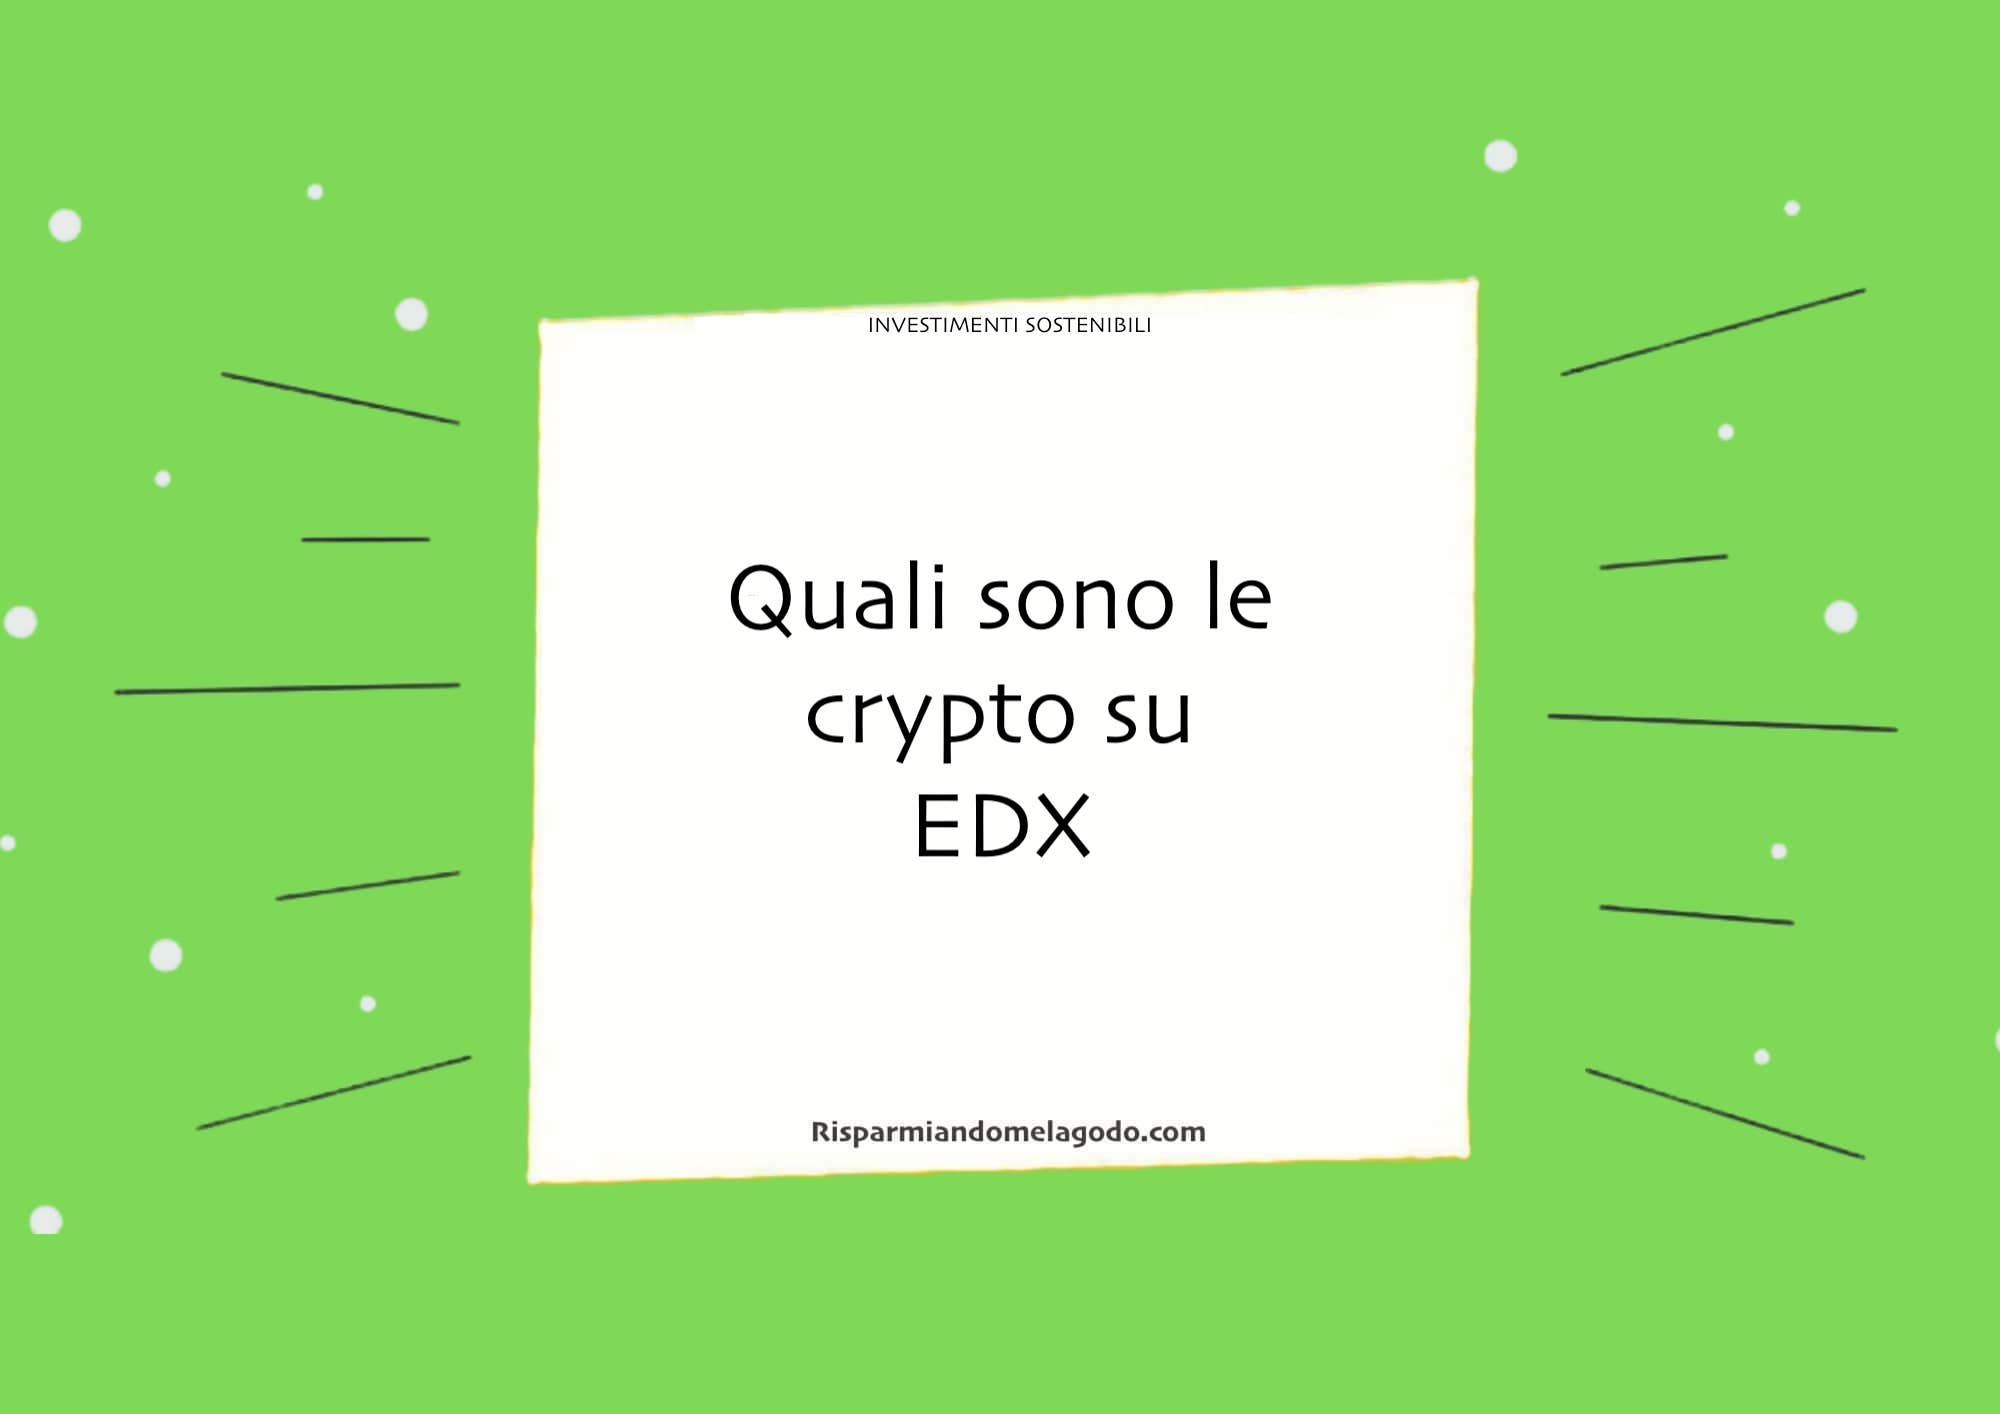 Quali sono le crypto su EDX